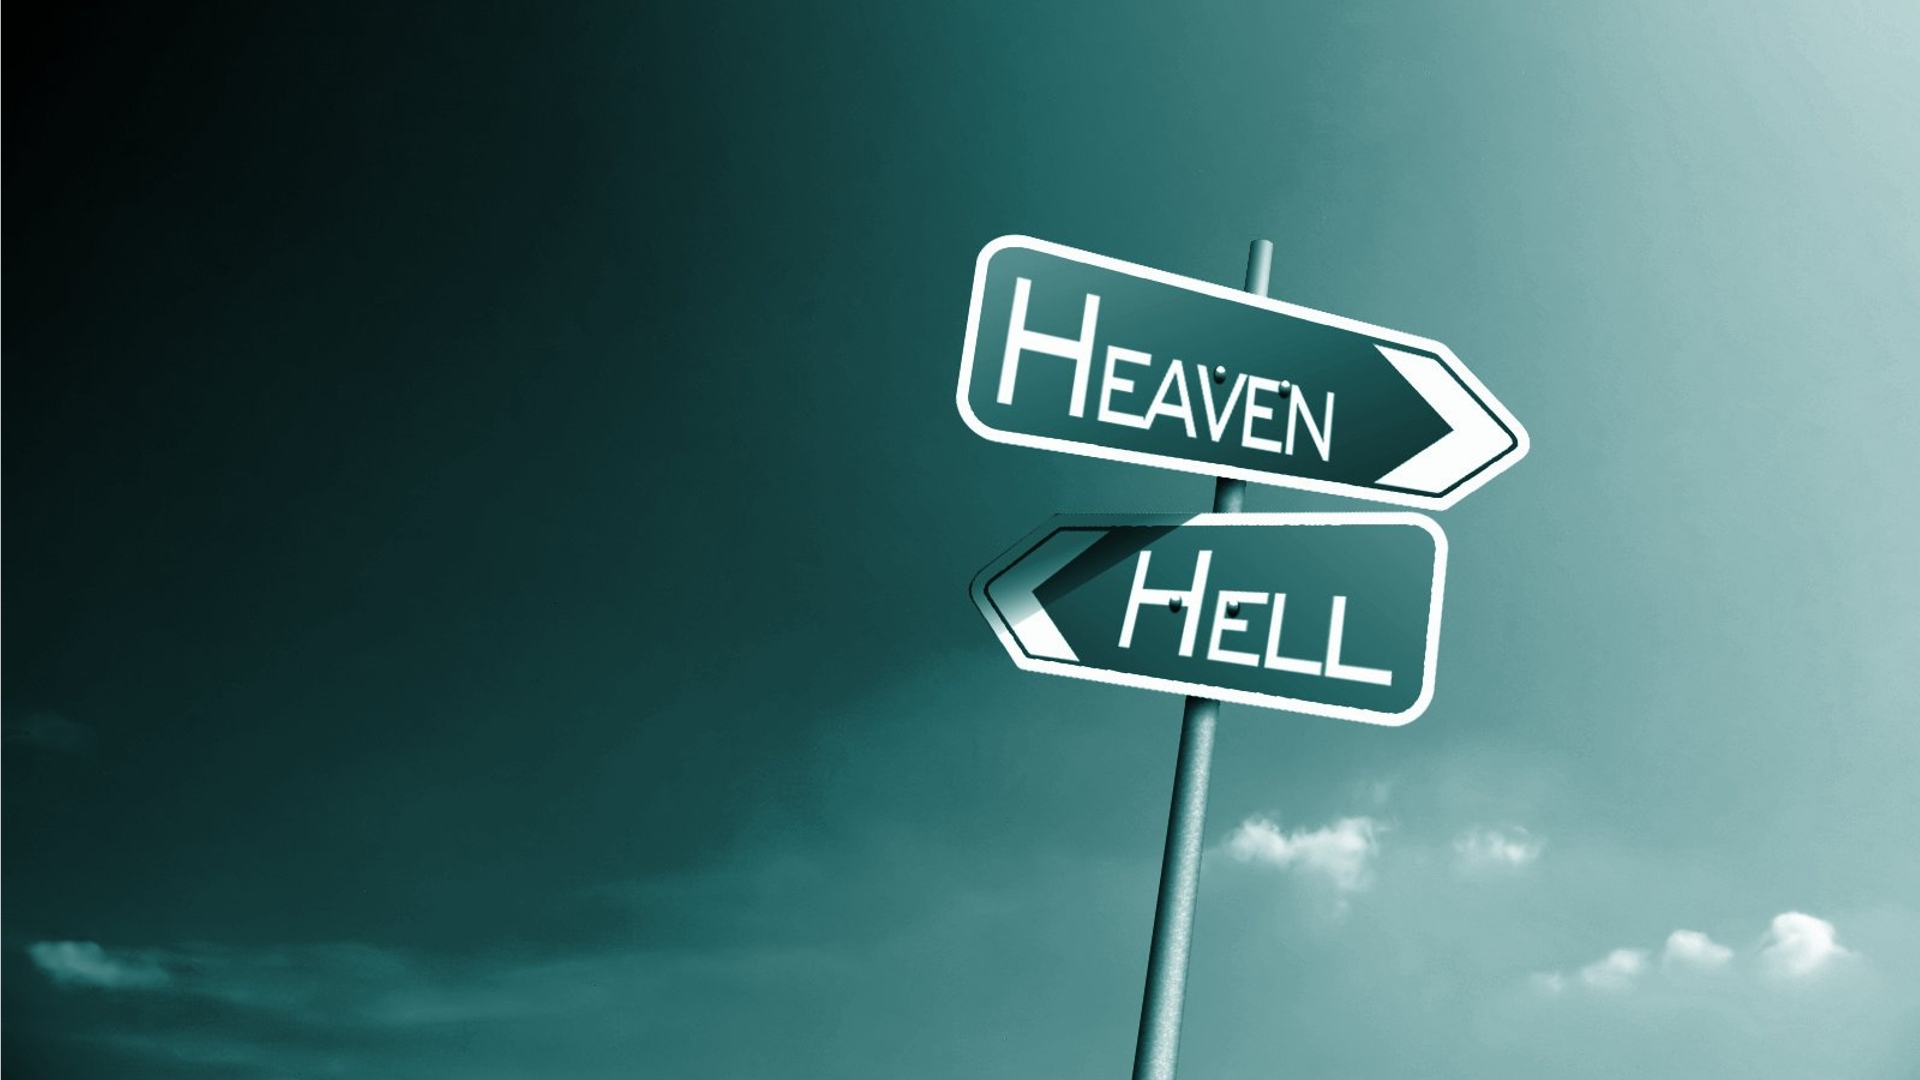 Heaven Hell HD